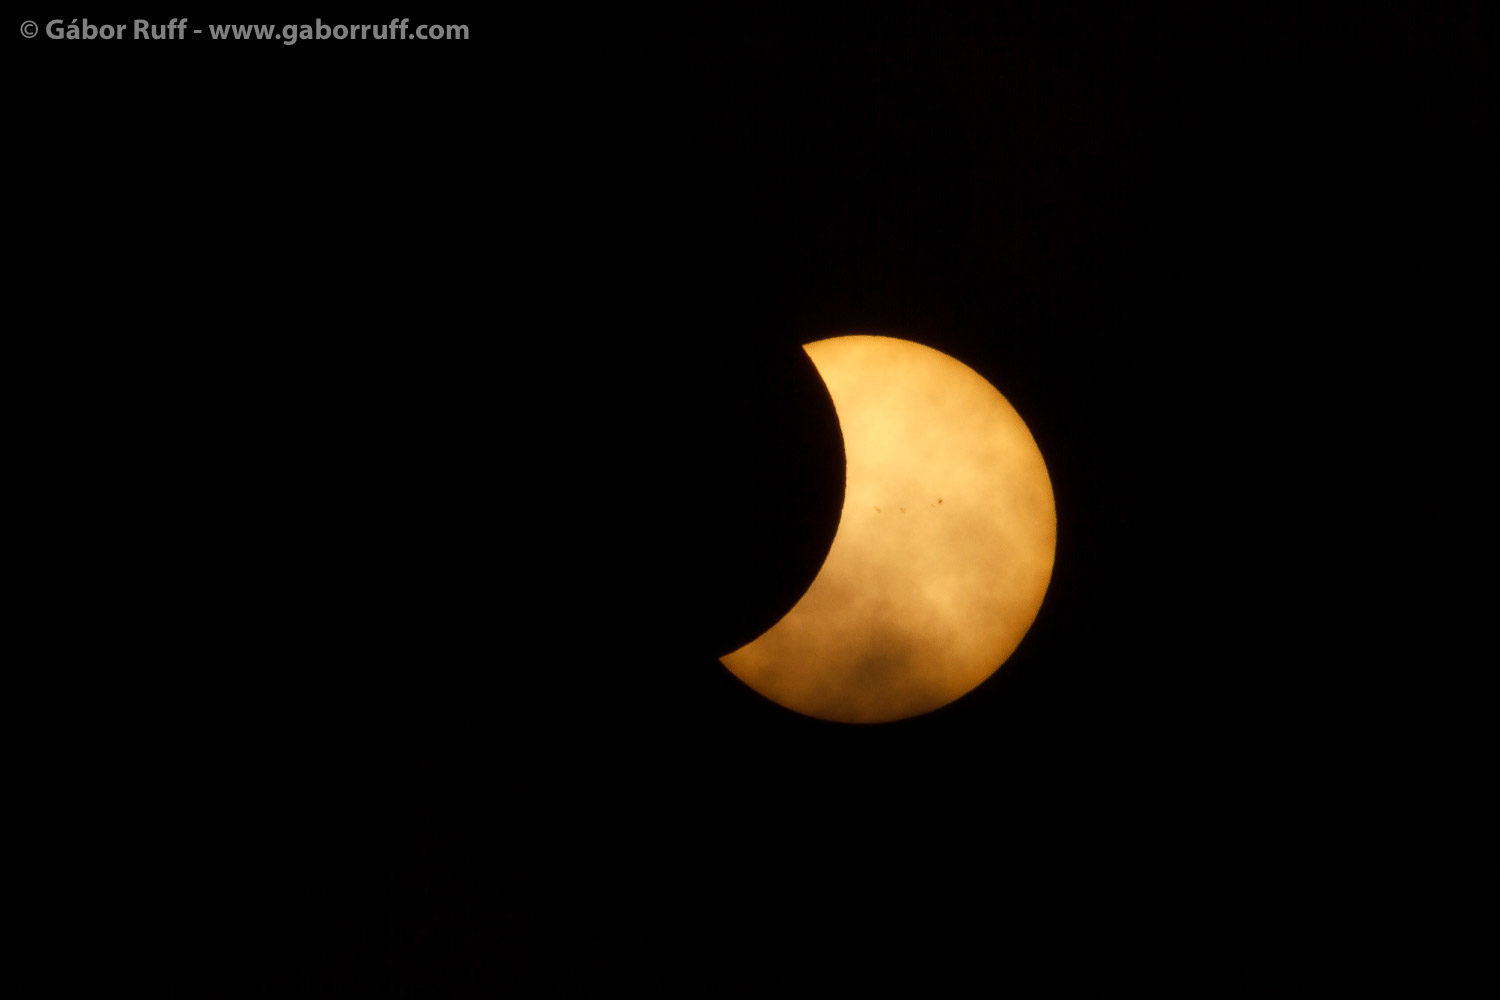 GR_170821_9261-solar-eclipse-1500x1000.jpg